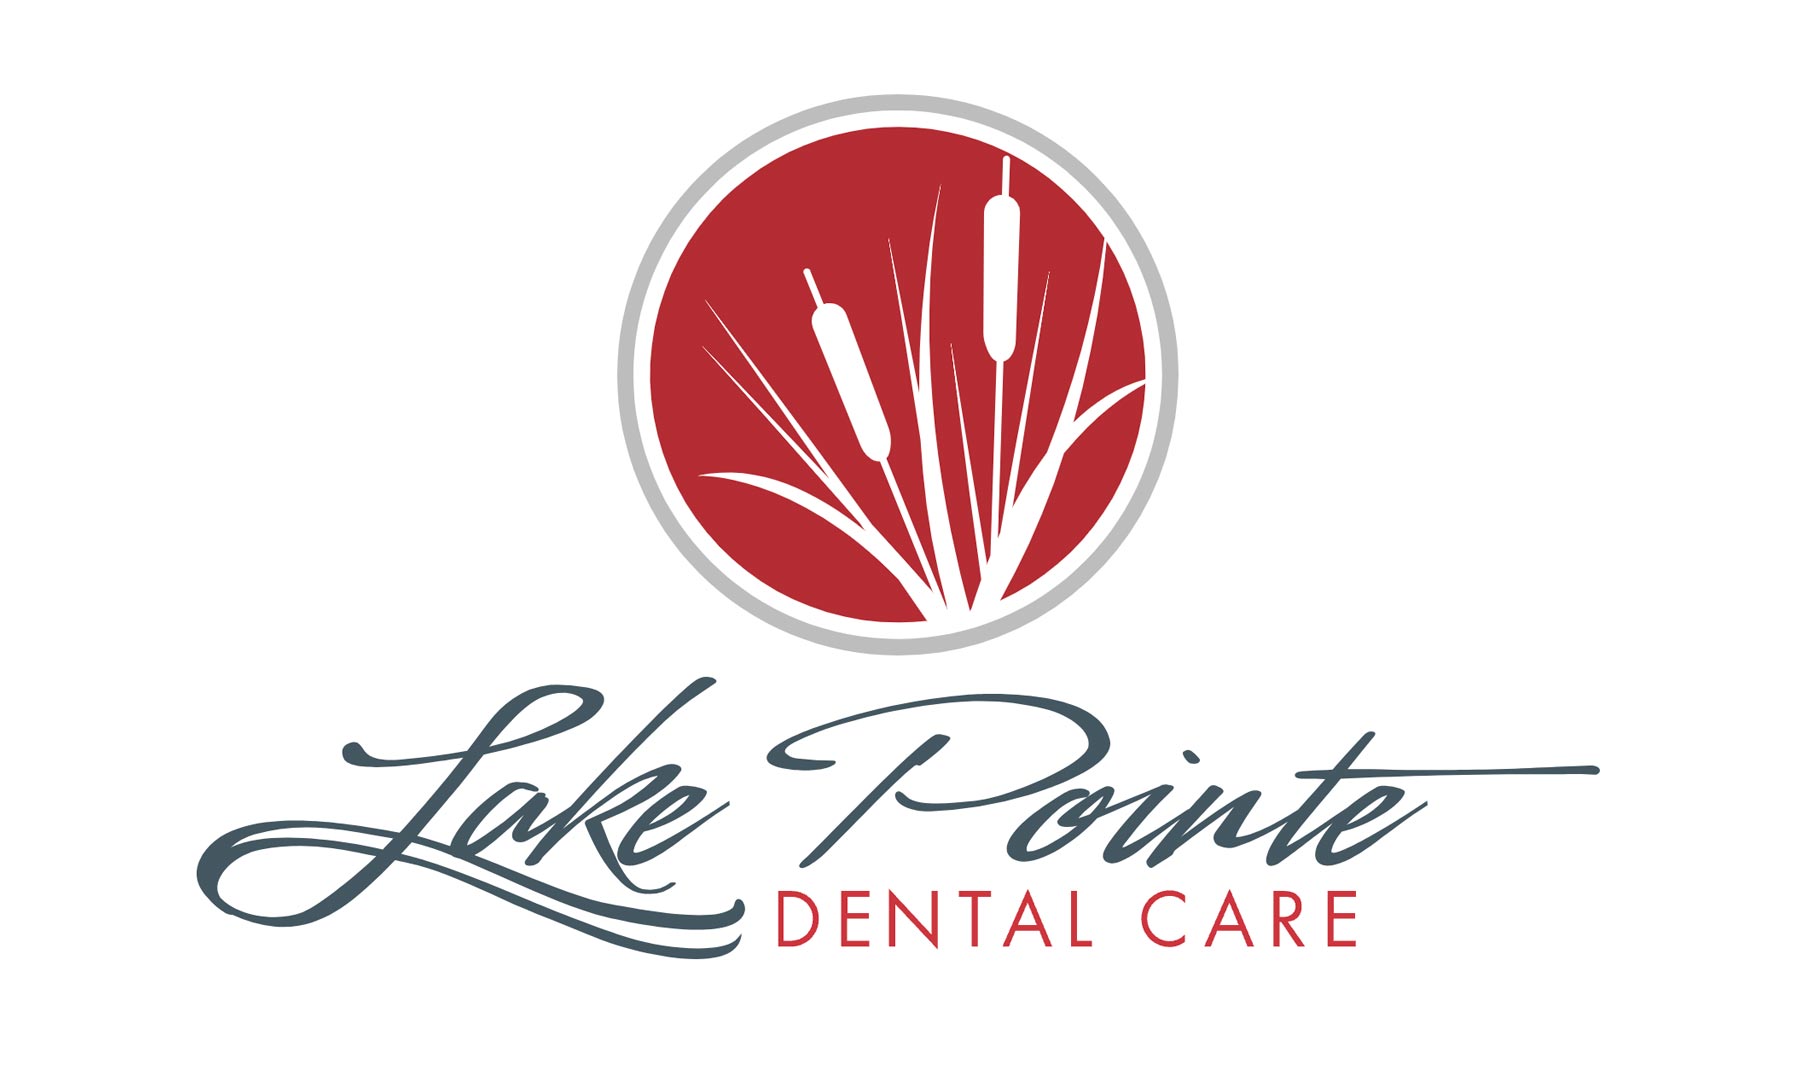 Lake Point Dental Care logo